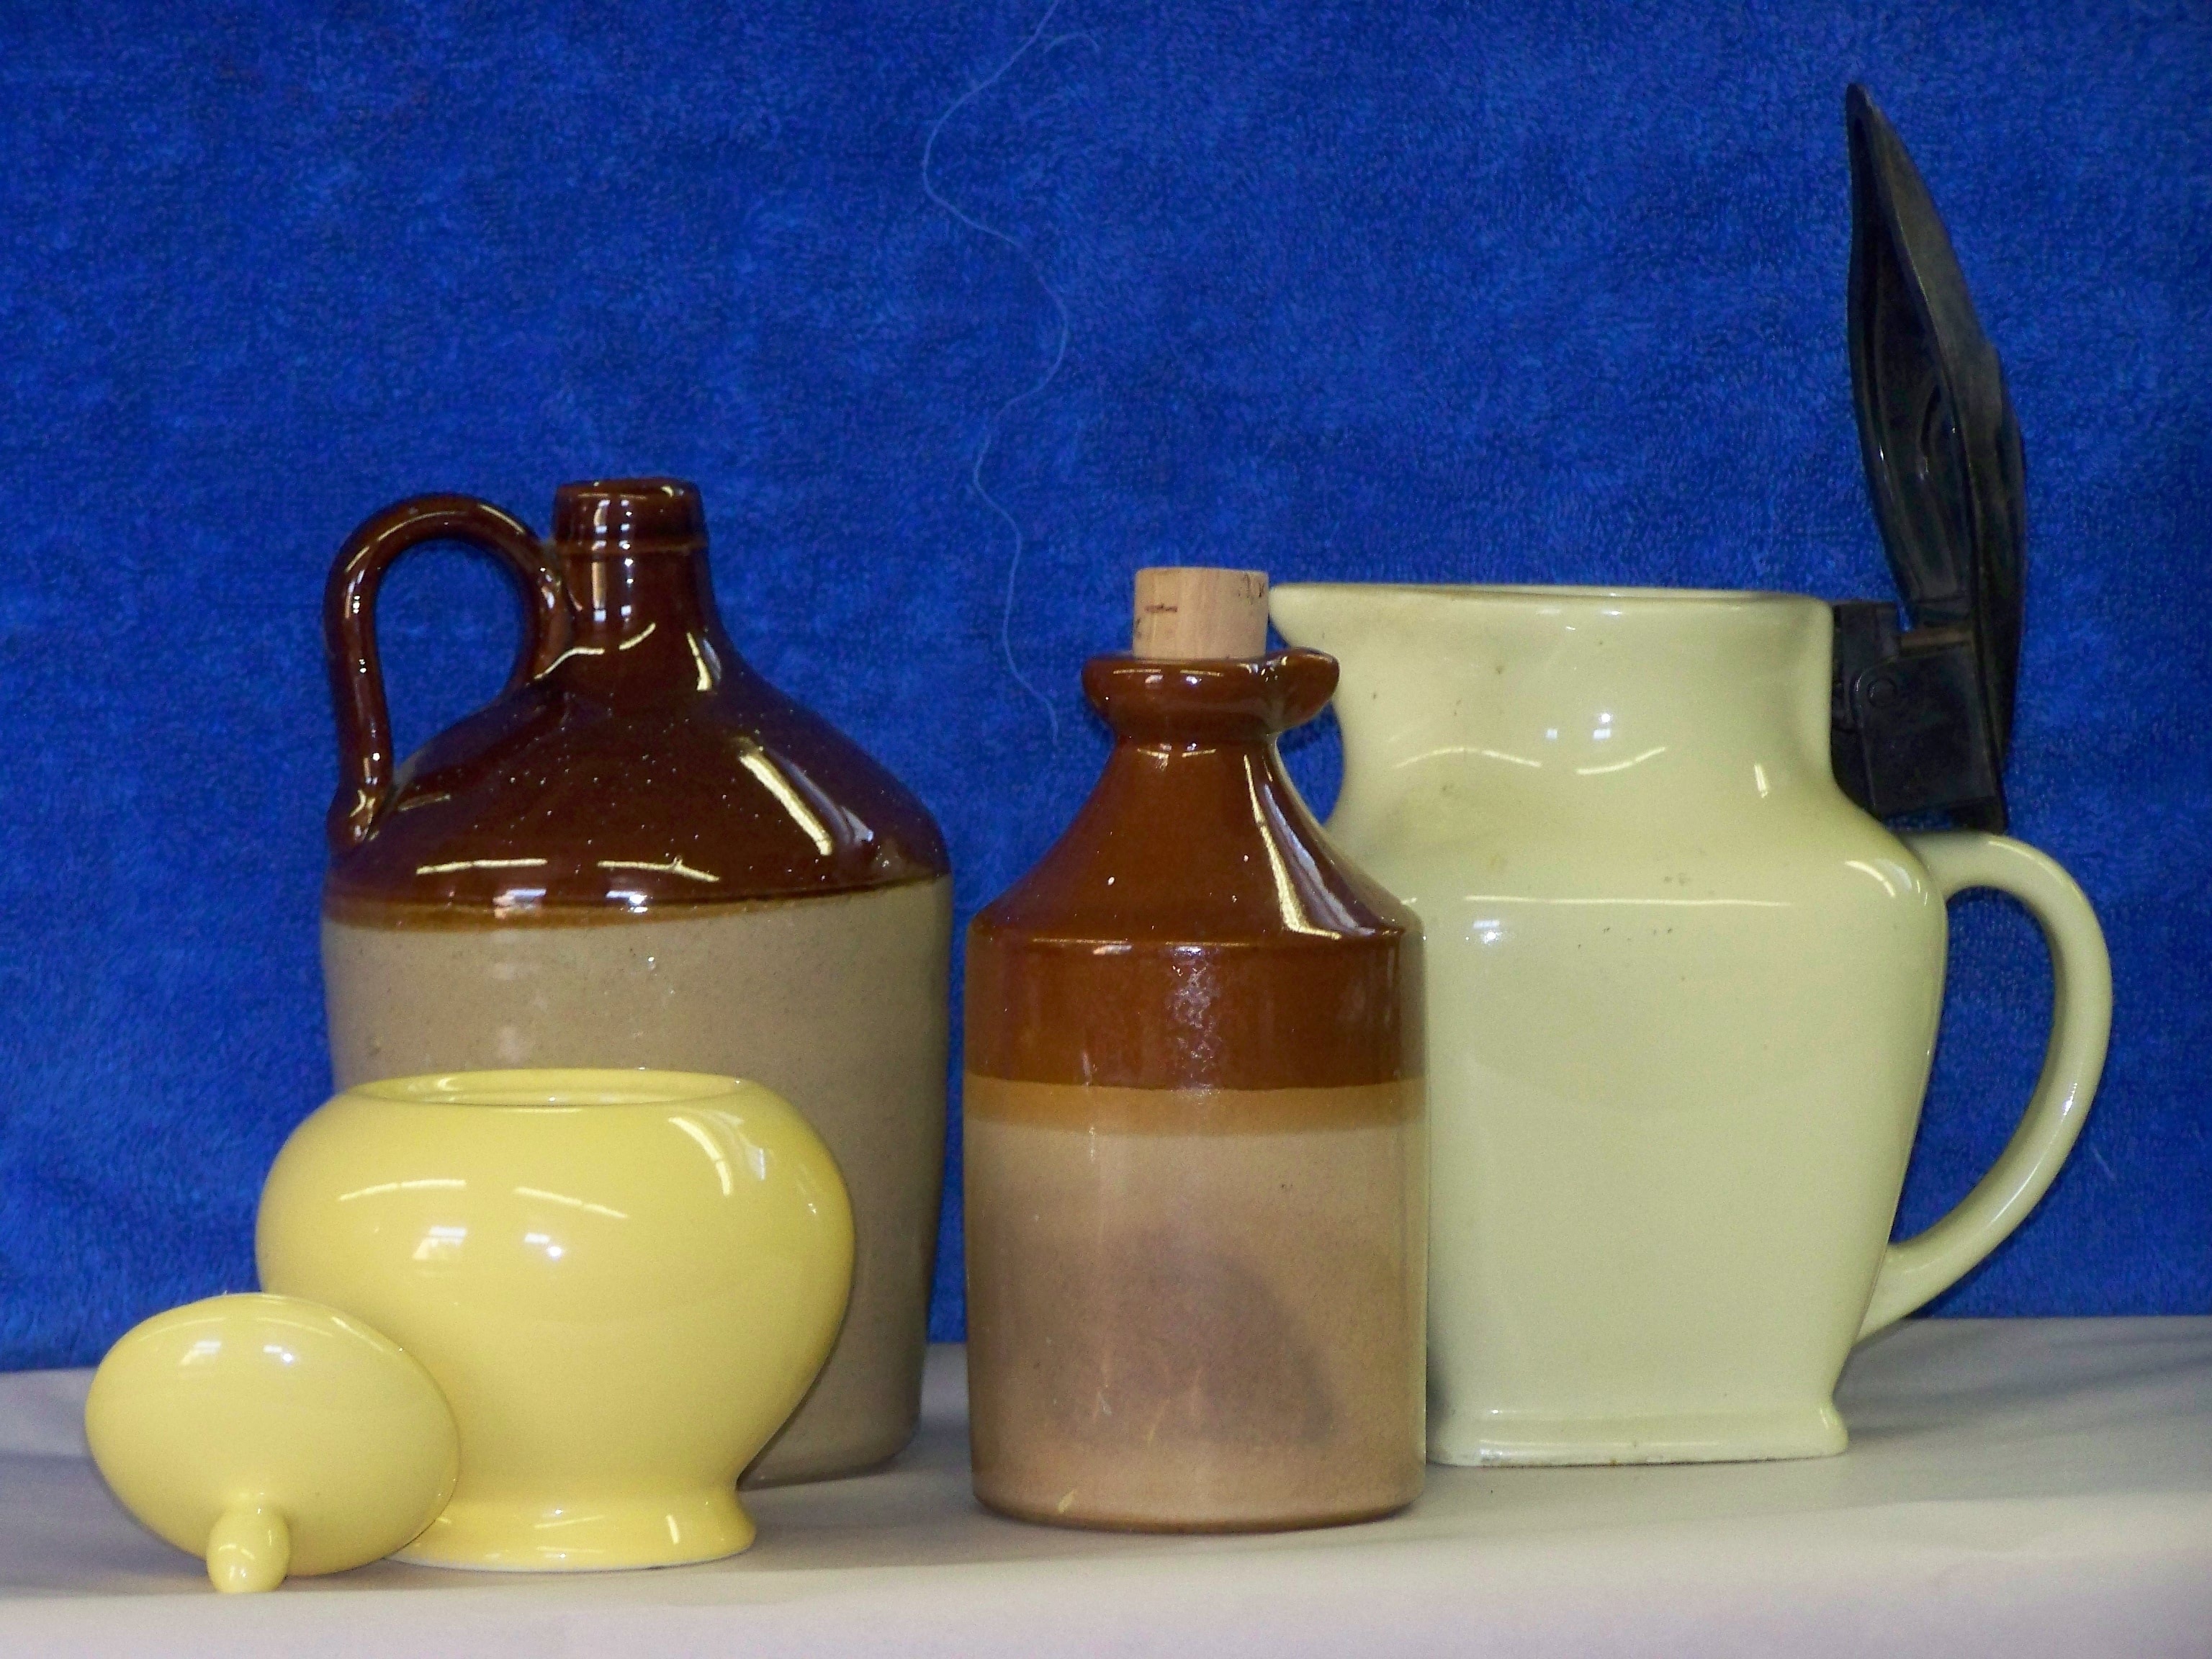 white and brown ceramic jug